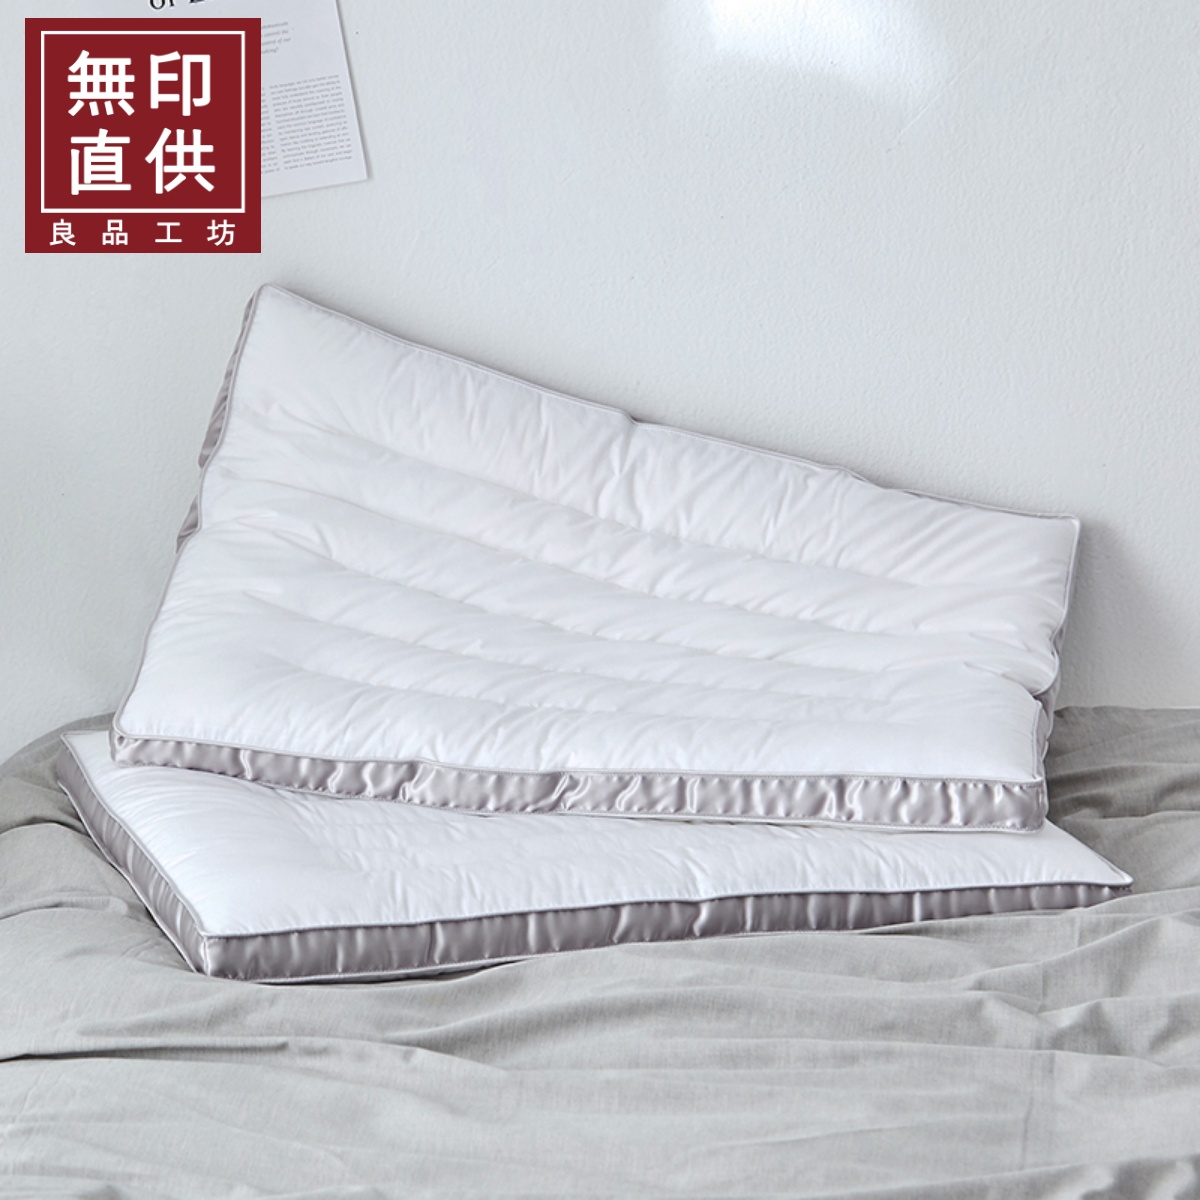 全棉一人份護頸低枕綠灰邊款供選纖維枕芯舒適柔軟 (8.3折)